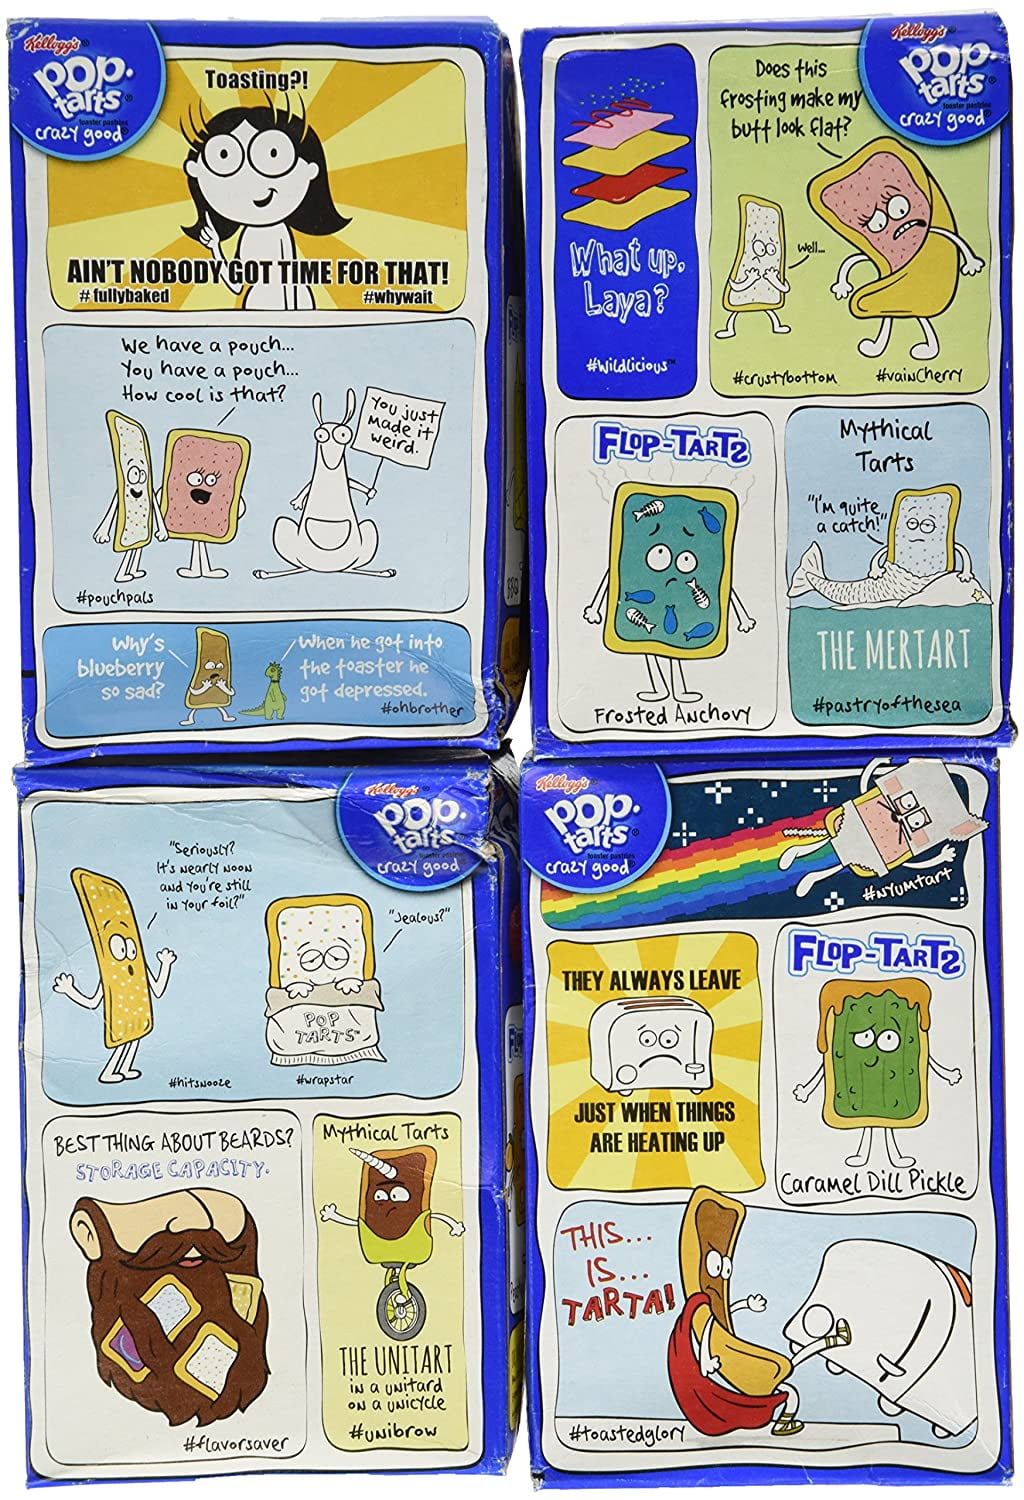 Pop Tarts Variety Pack FRUIT FLAVORED Sampler, 9 Pack! Bundle of 9